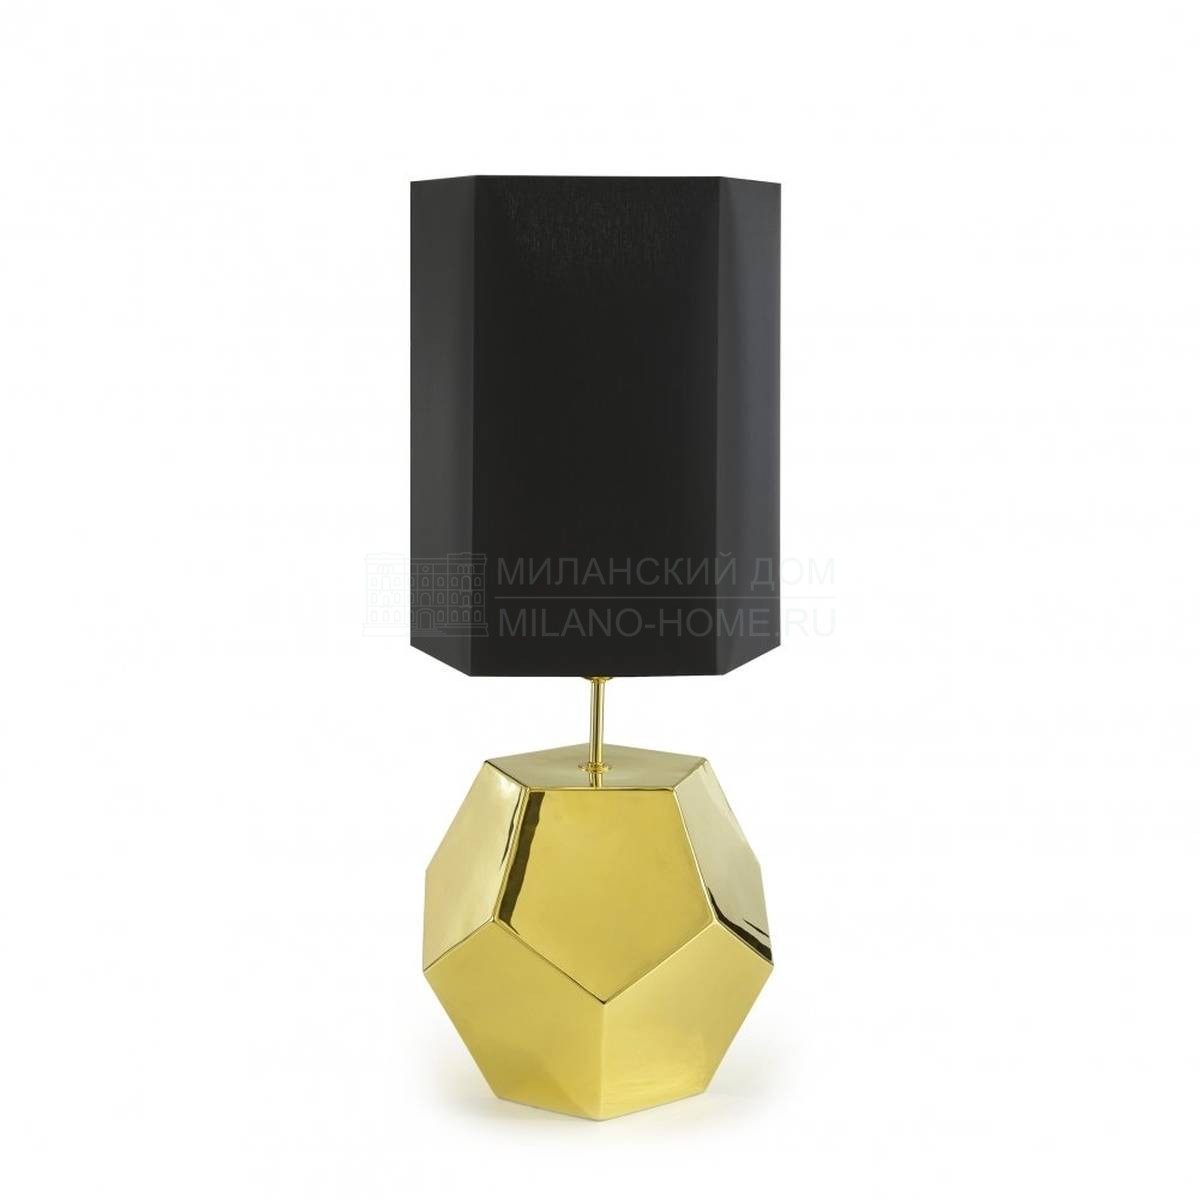 Настольная лампа Penta table lamp из Италии фабрики MARIONI